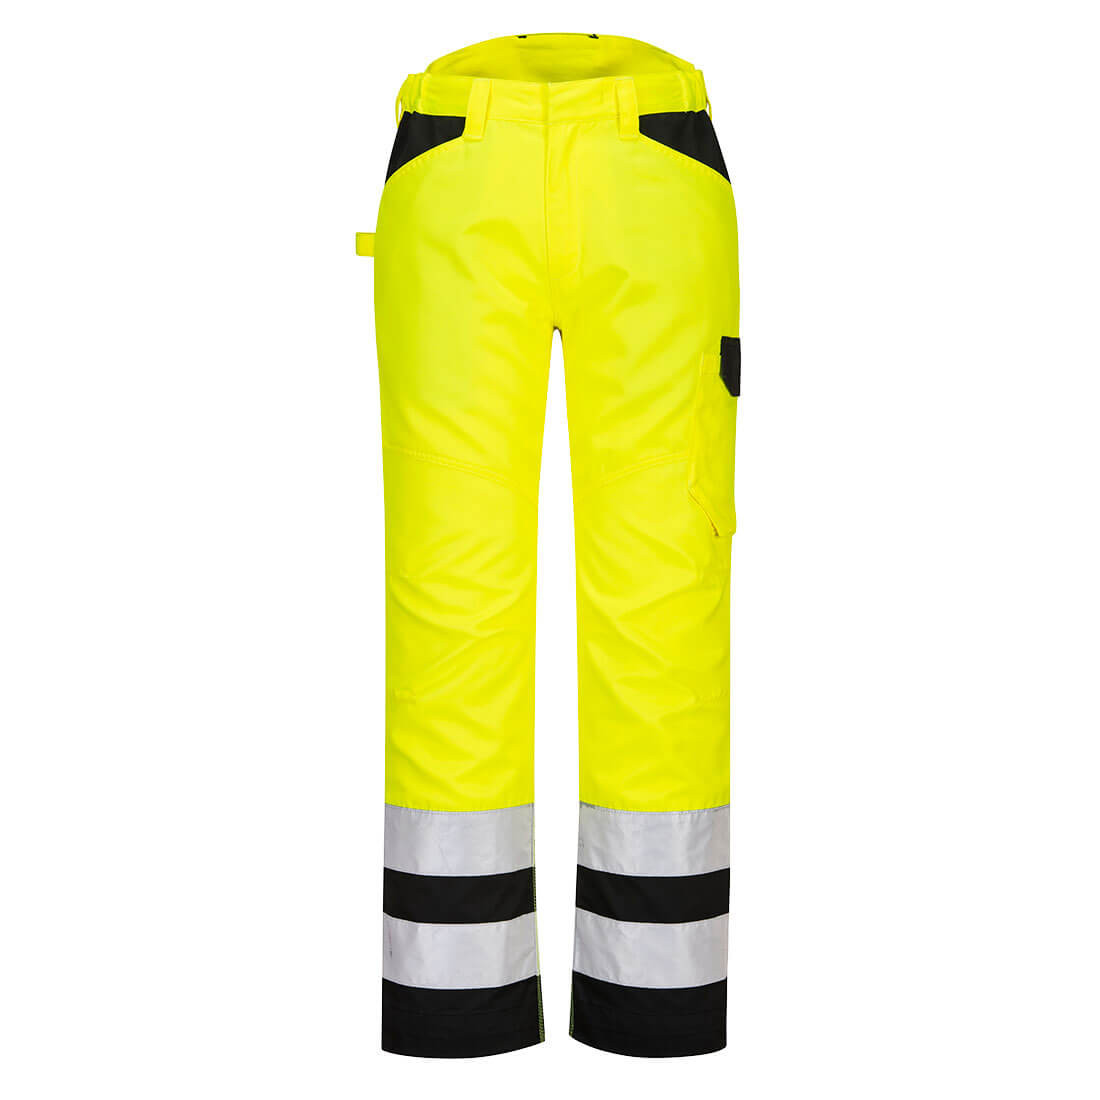 Pantaloni de service  HiVis PW2 - Imbracaminte de protectie